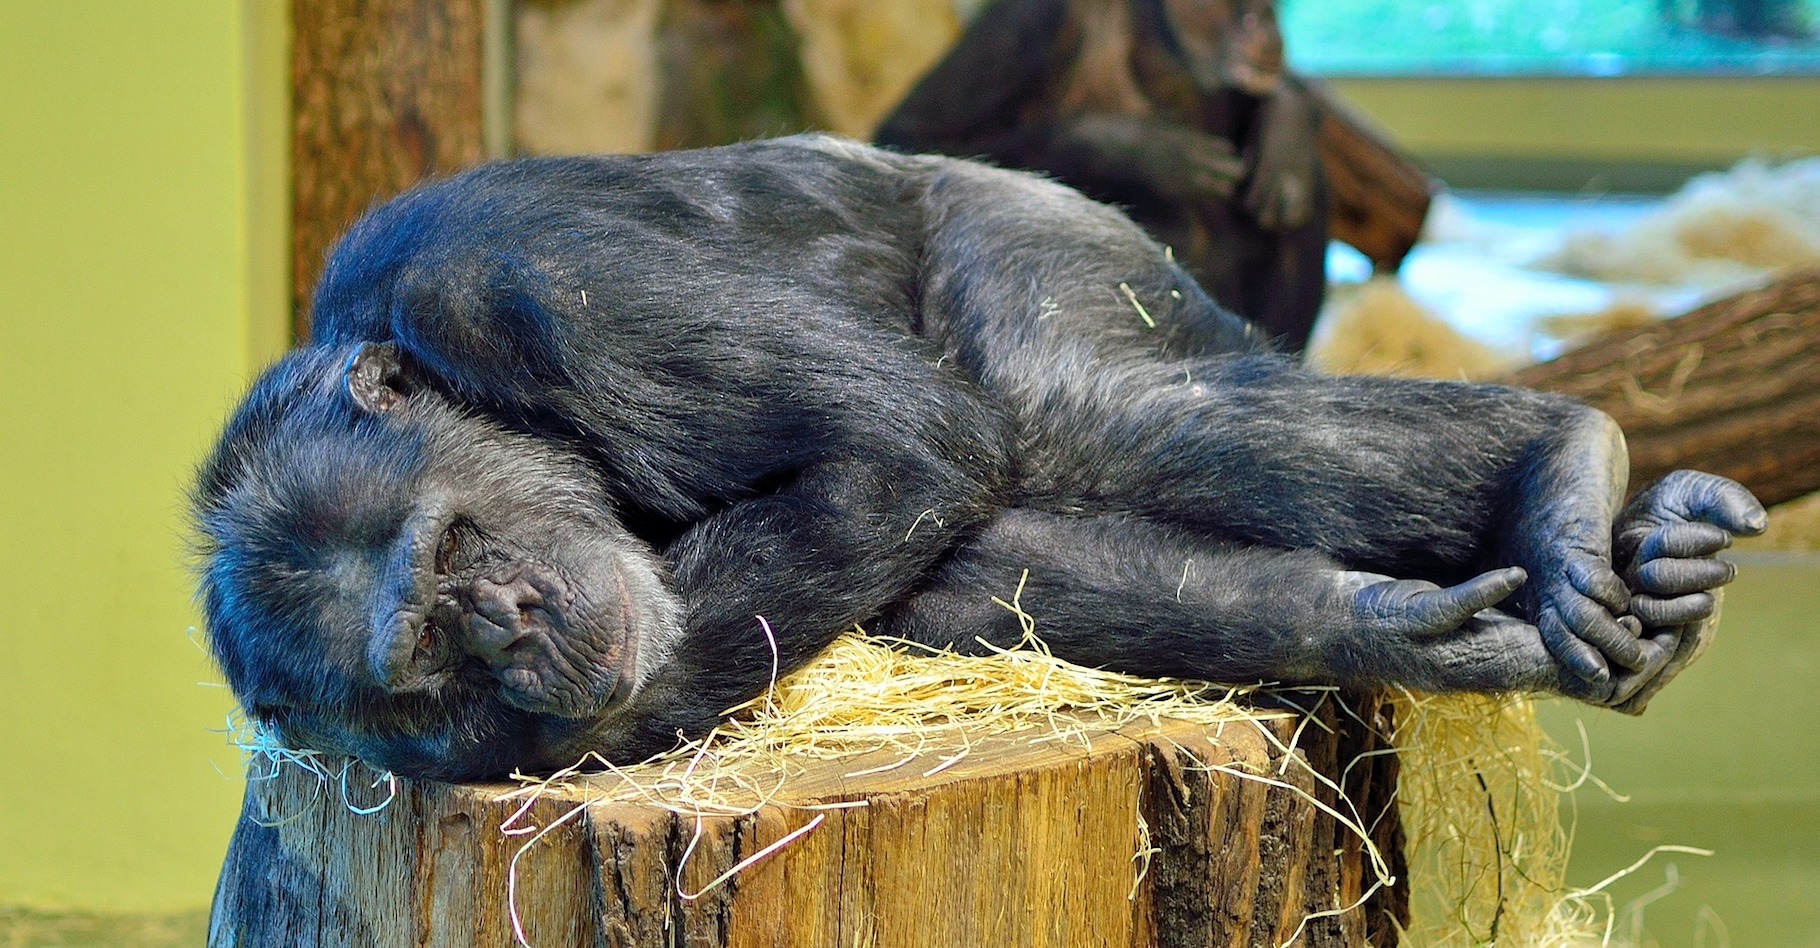 Les grands singes sont, avec l’homme, les seuls primates à faire leur lit. © Pictureman2014, Pixabay, CC0 Public Domain